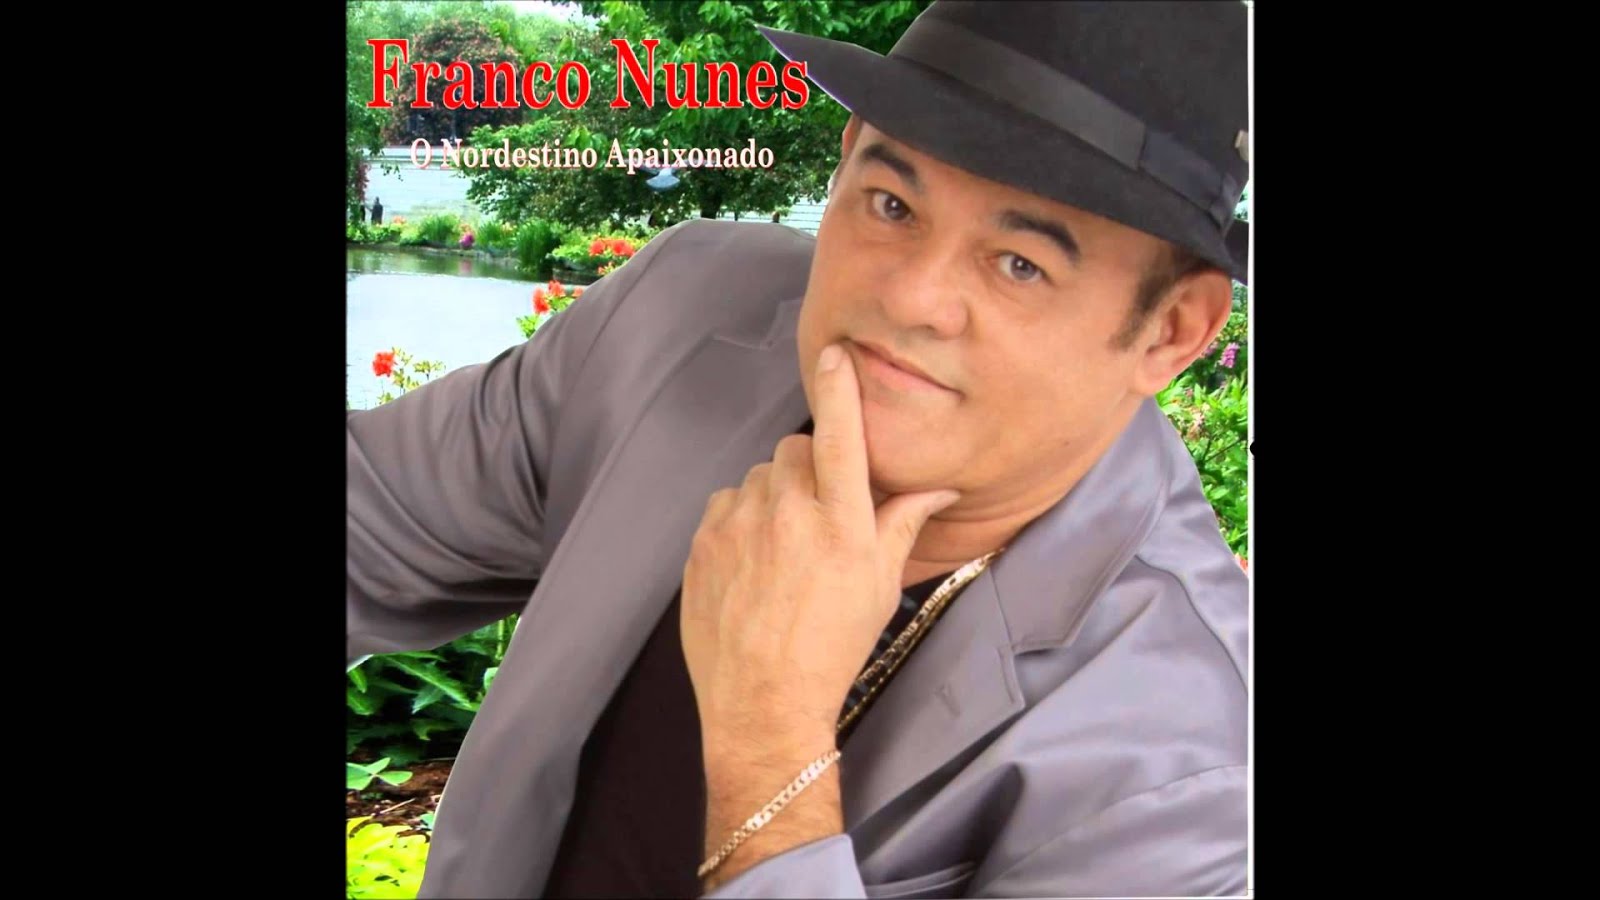 Cantor Franco Nunes - O Nordestino Apaixonado